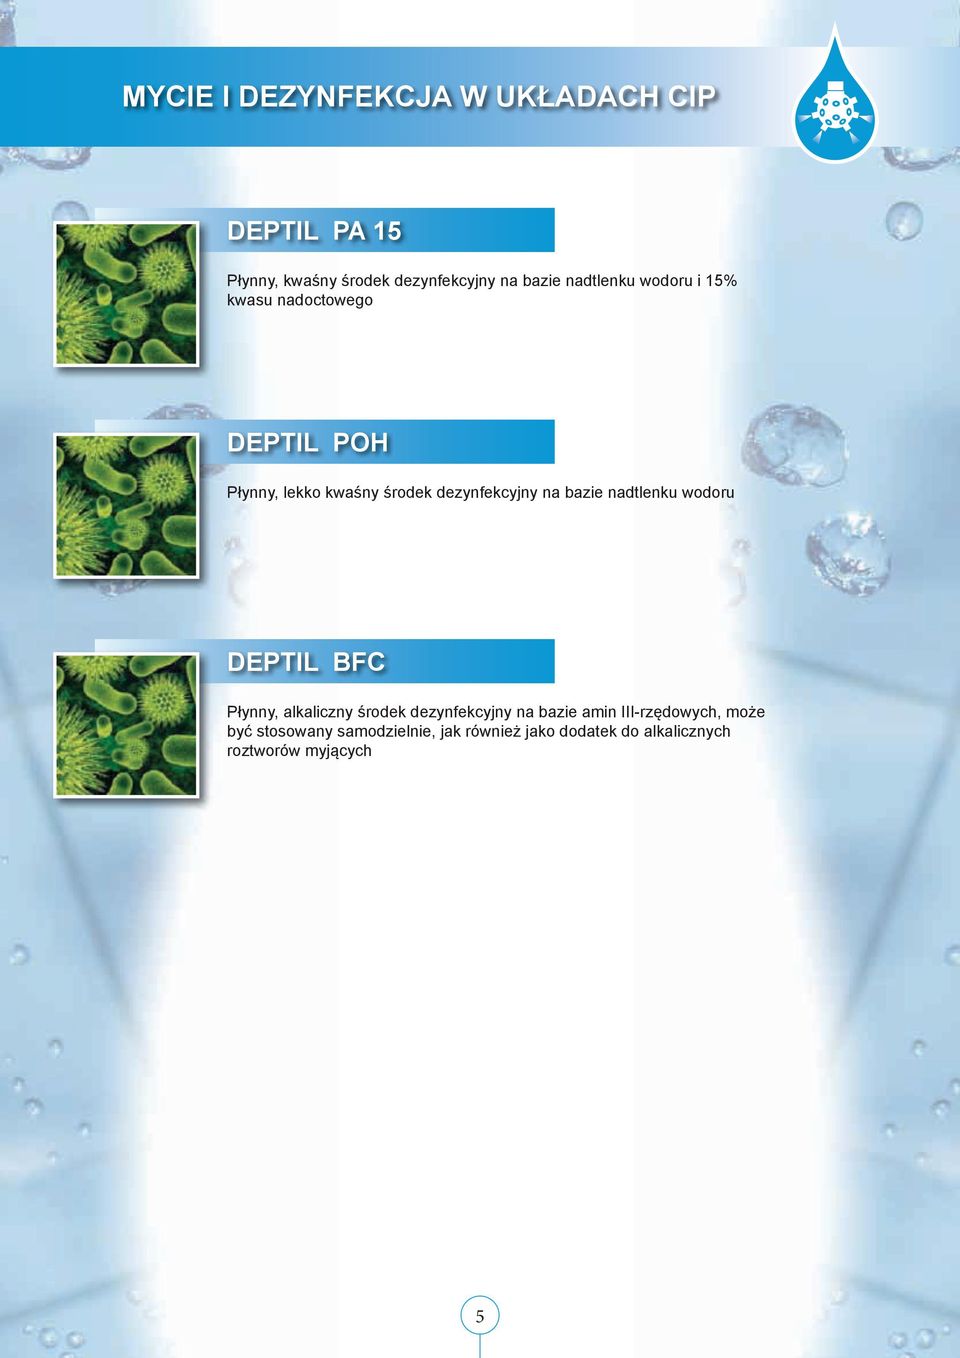 bazie nadtlenku wodoru DEPTIL BFC Płynny, alkaliczny środek dezynfekcyjny na bazie amin